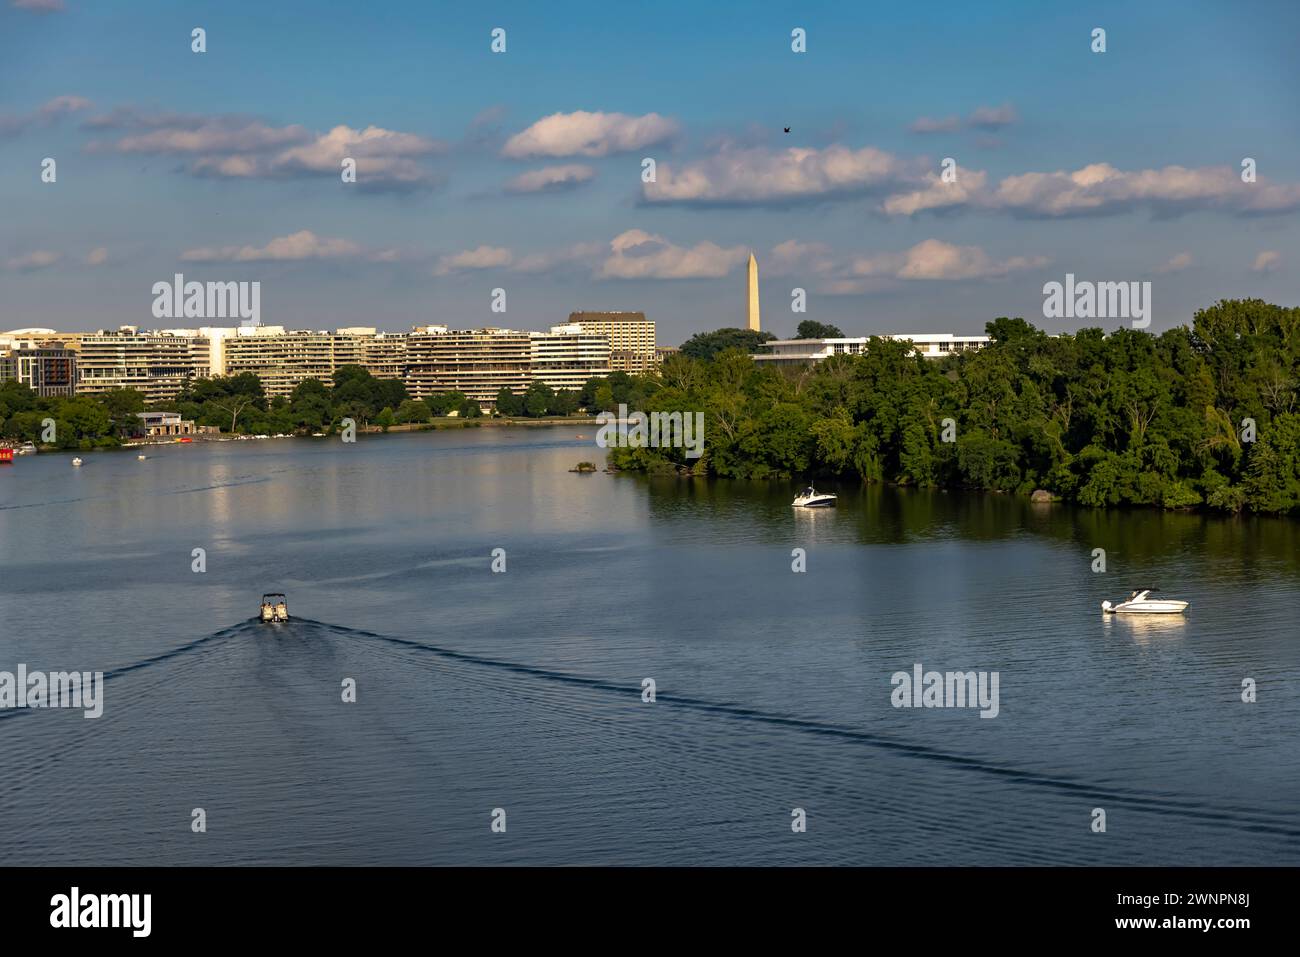 Il fiume Potomac separa Georgetown, Washington D.C., da Arlington, Virginia, ed è molto frequentato dai diportisti, dai kayak e dagli appassionati di attività all'aperto. Foto Stock